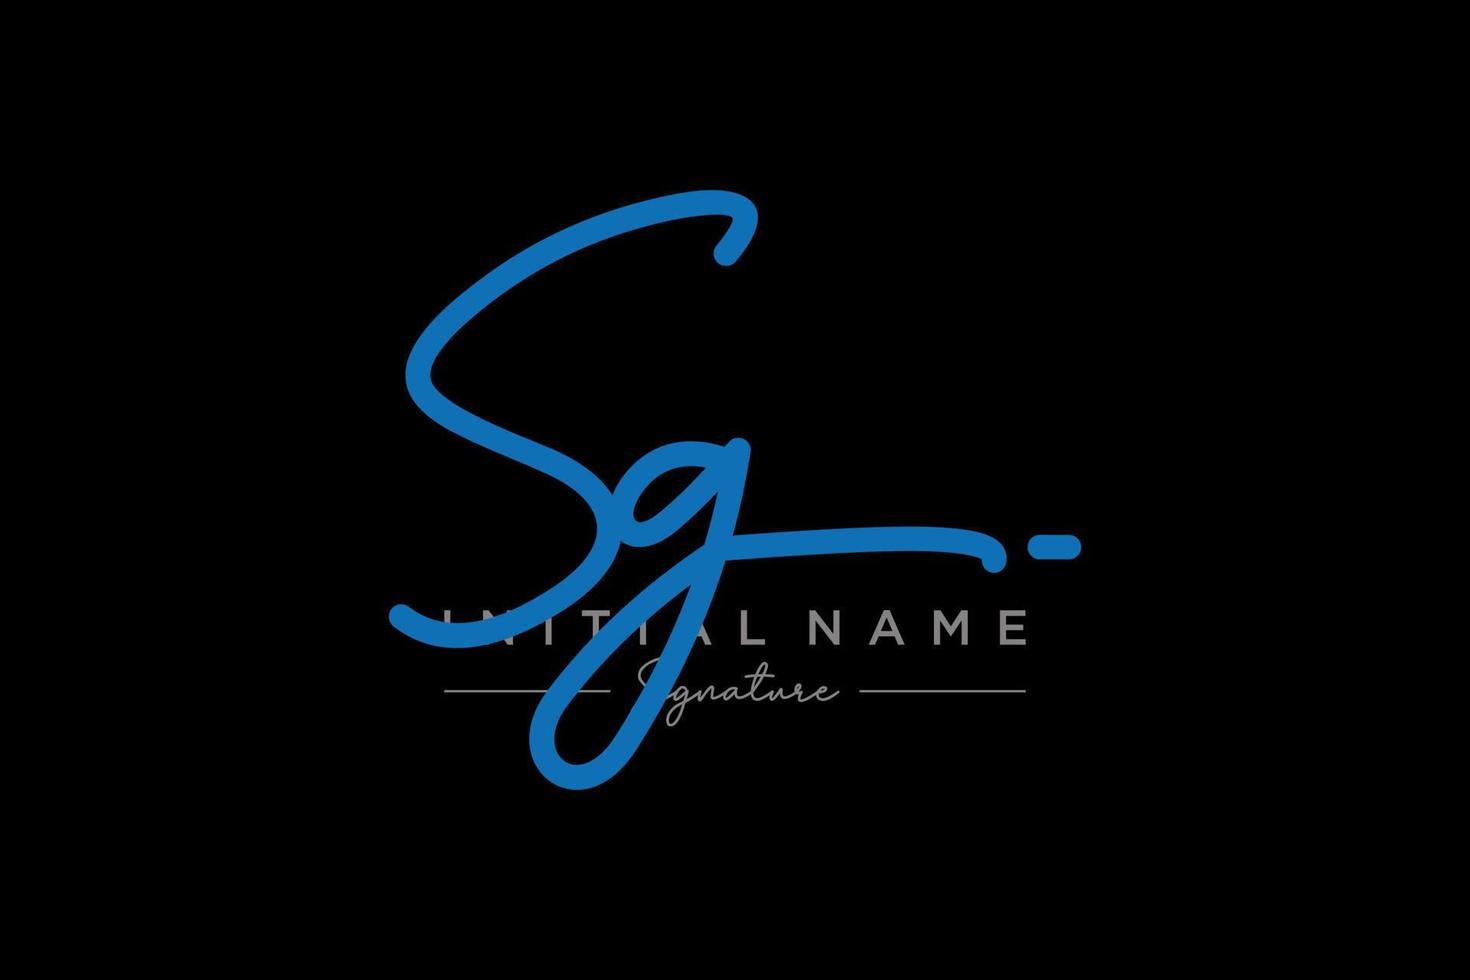 vector de plantilla de logotipo de firma sg inicial. ilustración de vector de letras de caligrafía dibujada a mano.